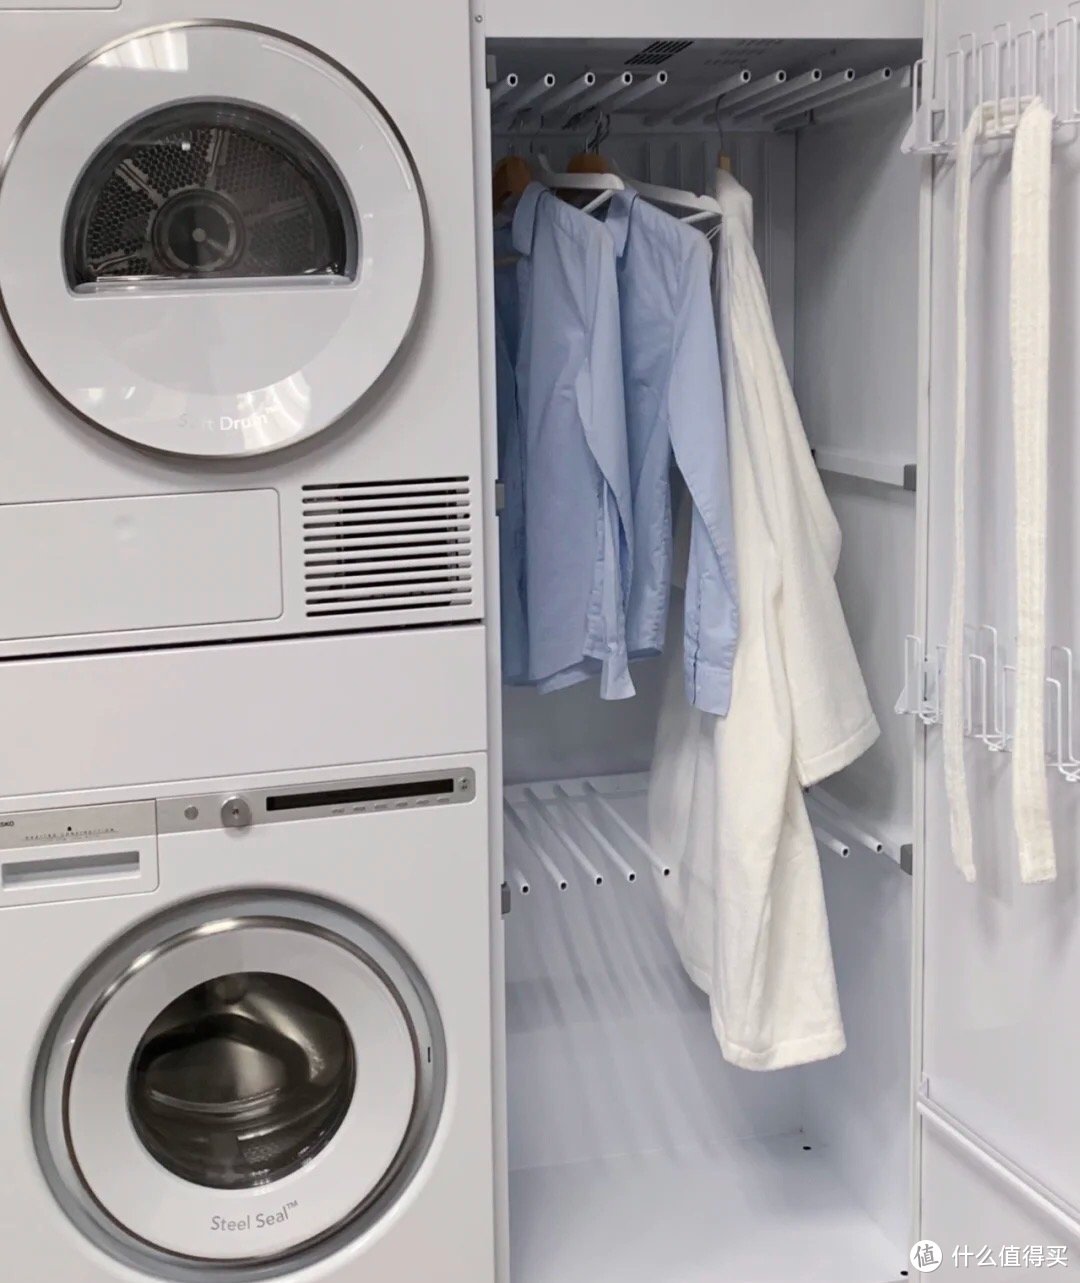 极致的简约美，北欧高端品牌ASKO的洗烘套装了解一下